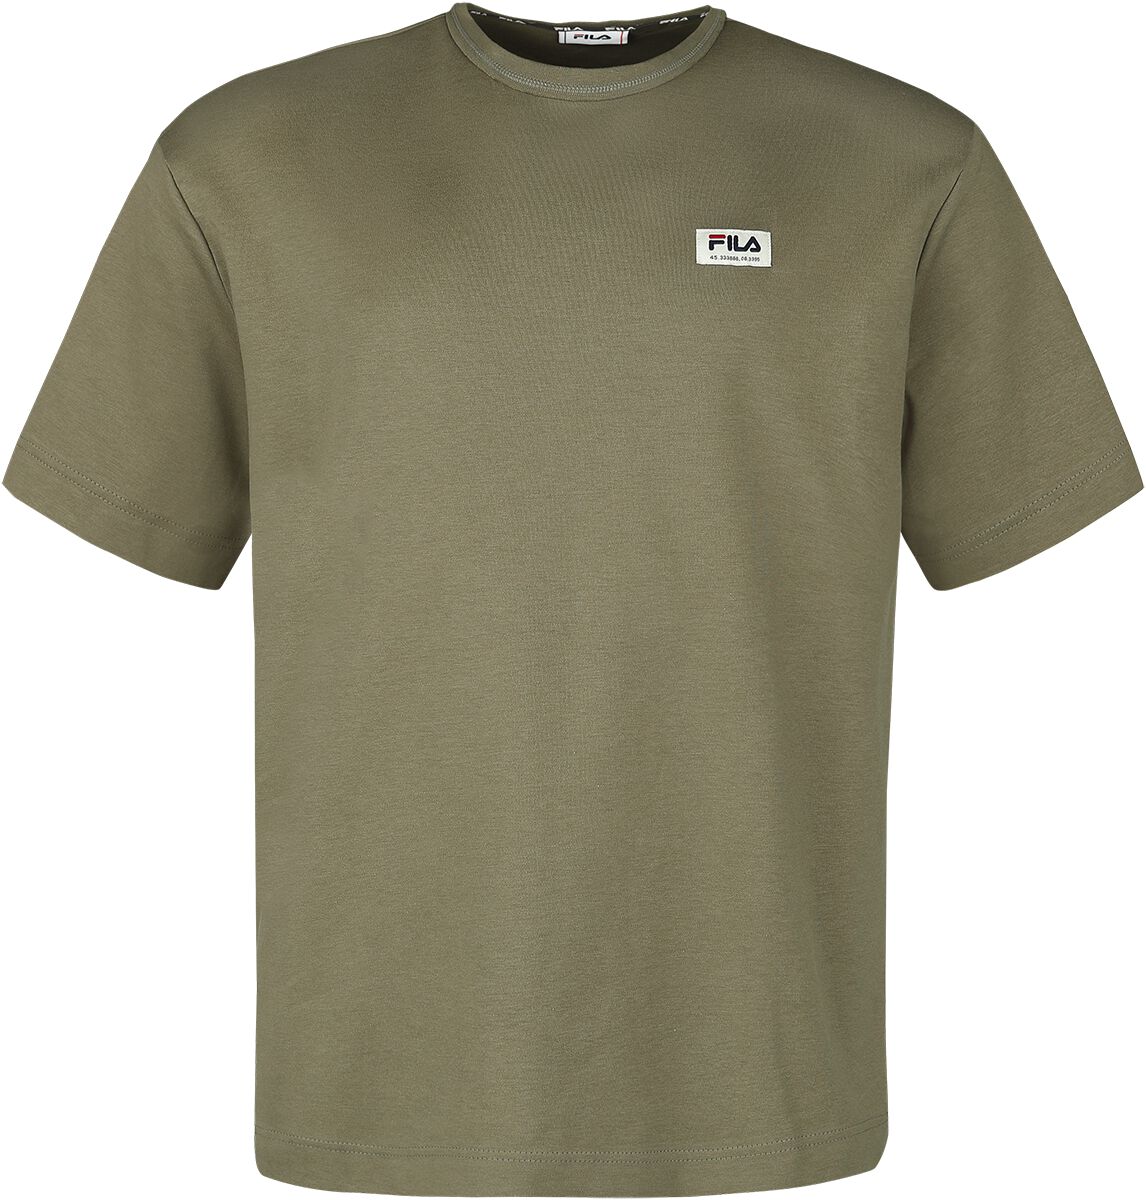 Fila TAIPAS oversized tee T-Shirt oliv in S